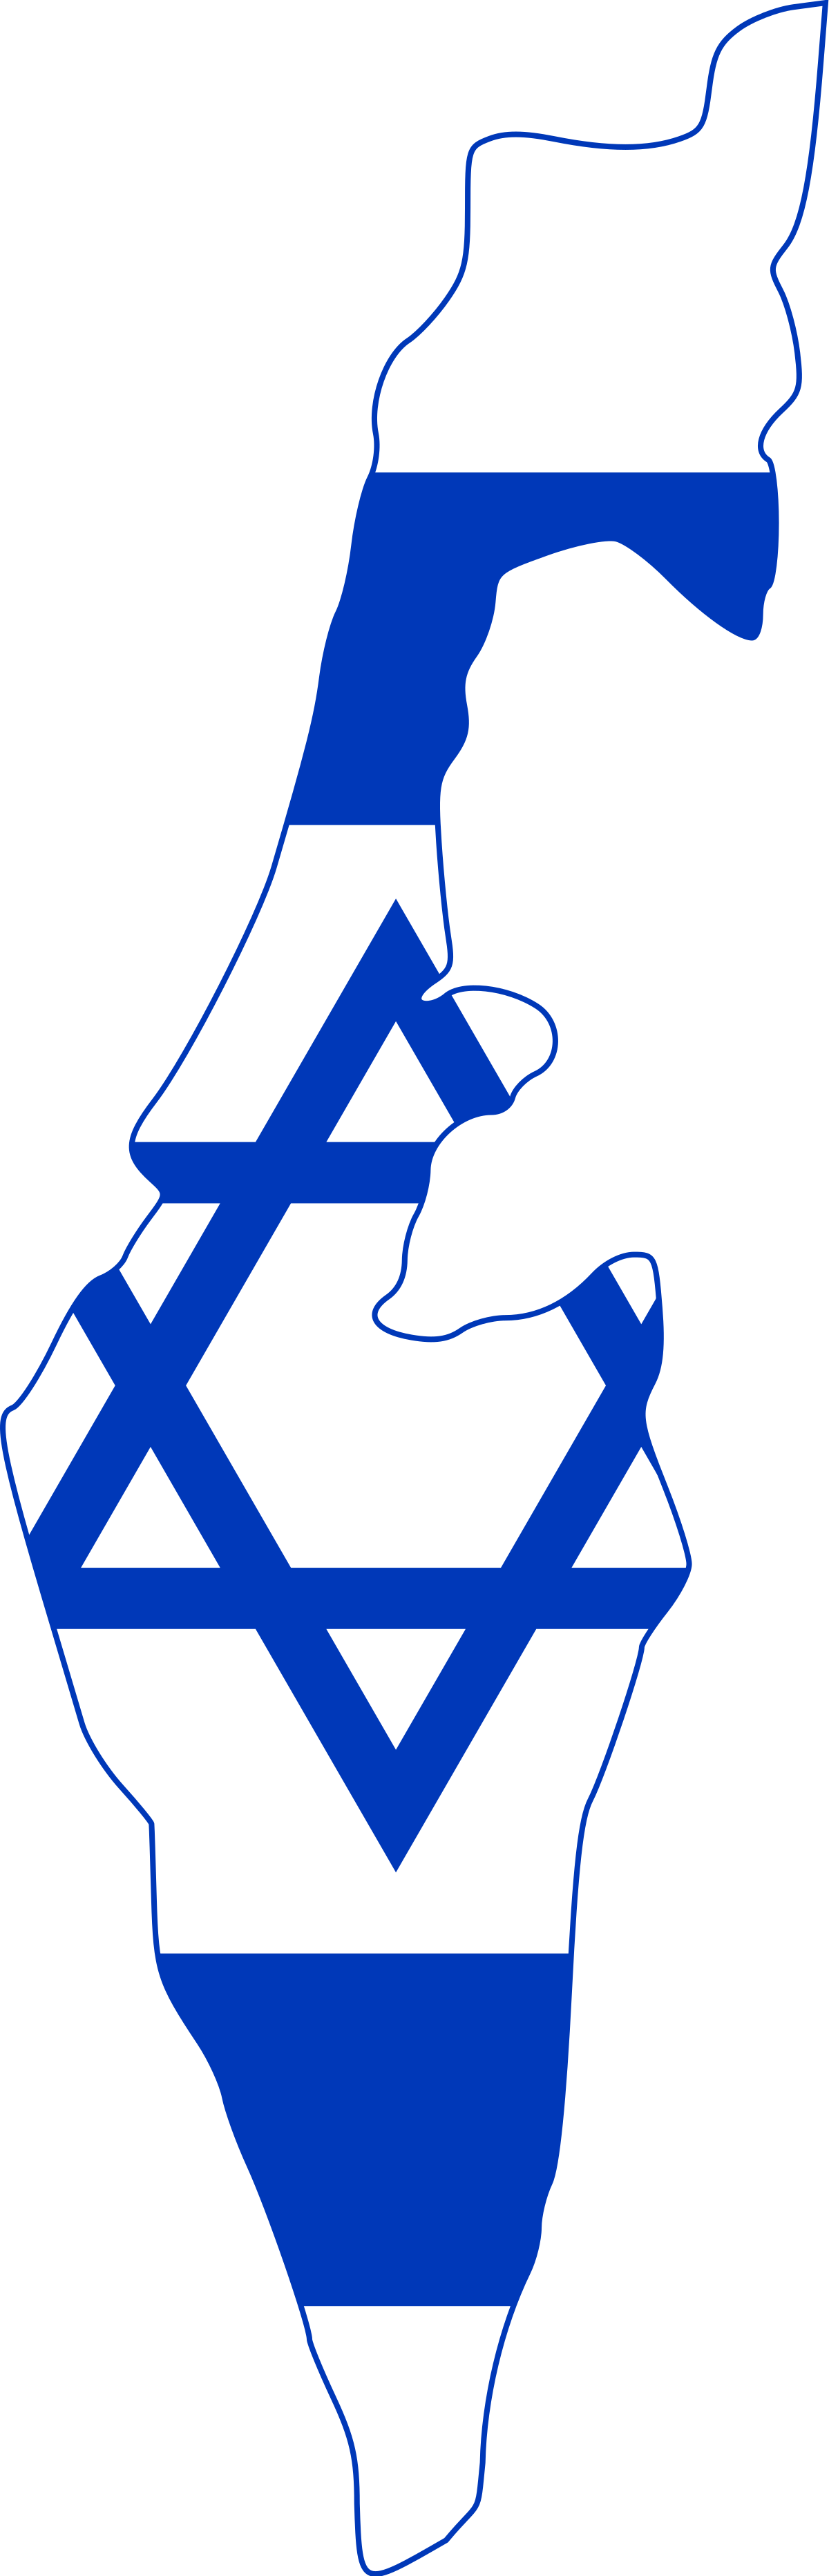 Israel Flag Transparent Background